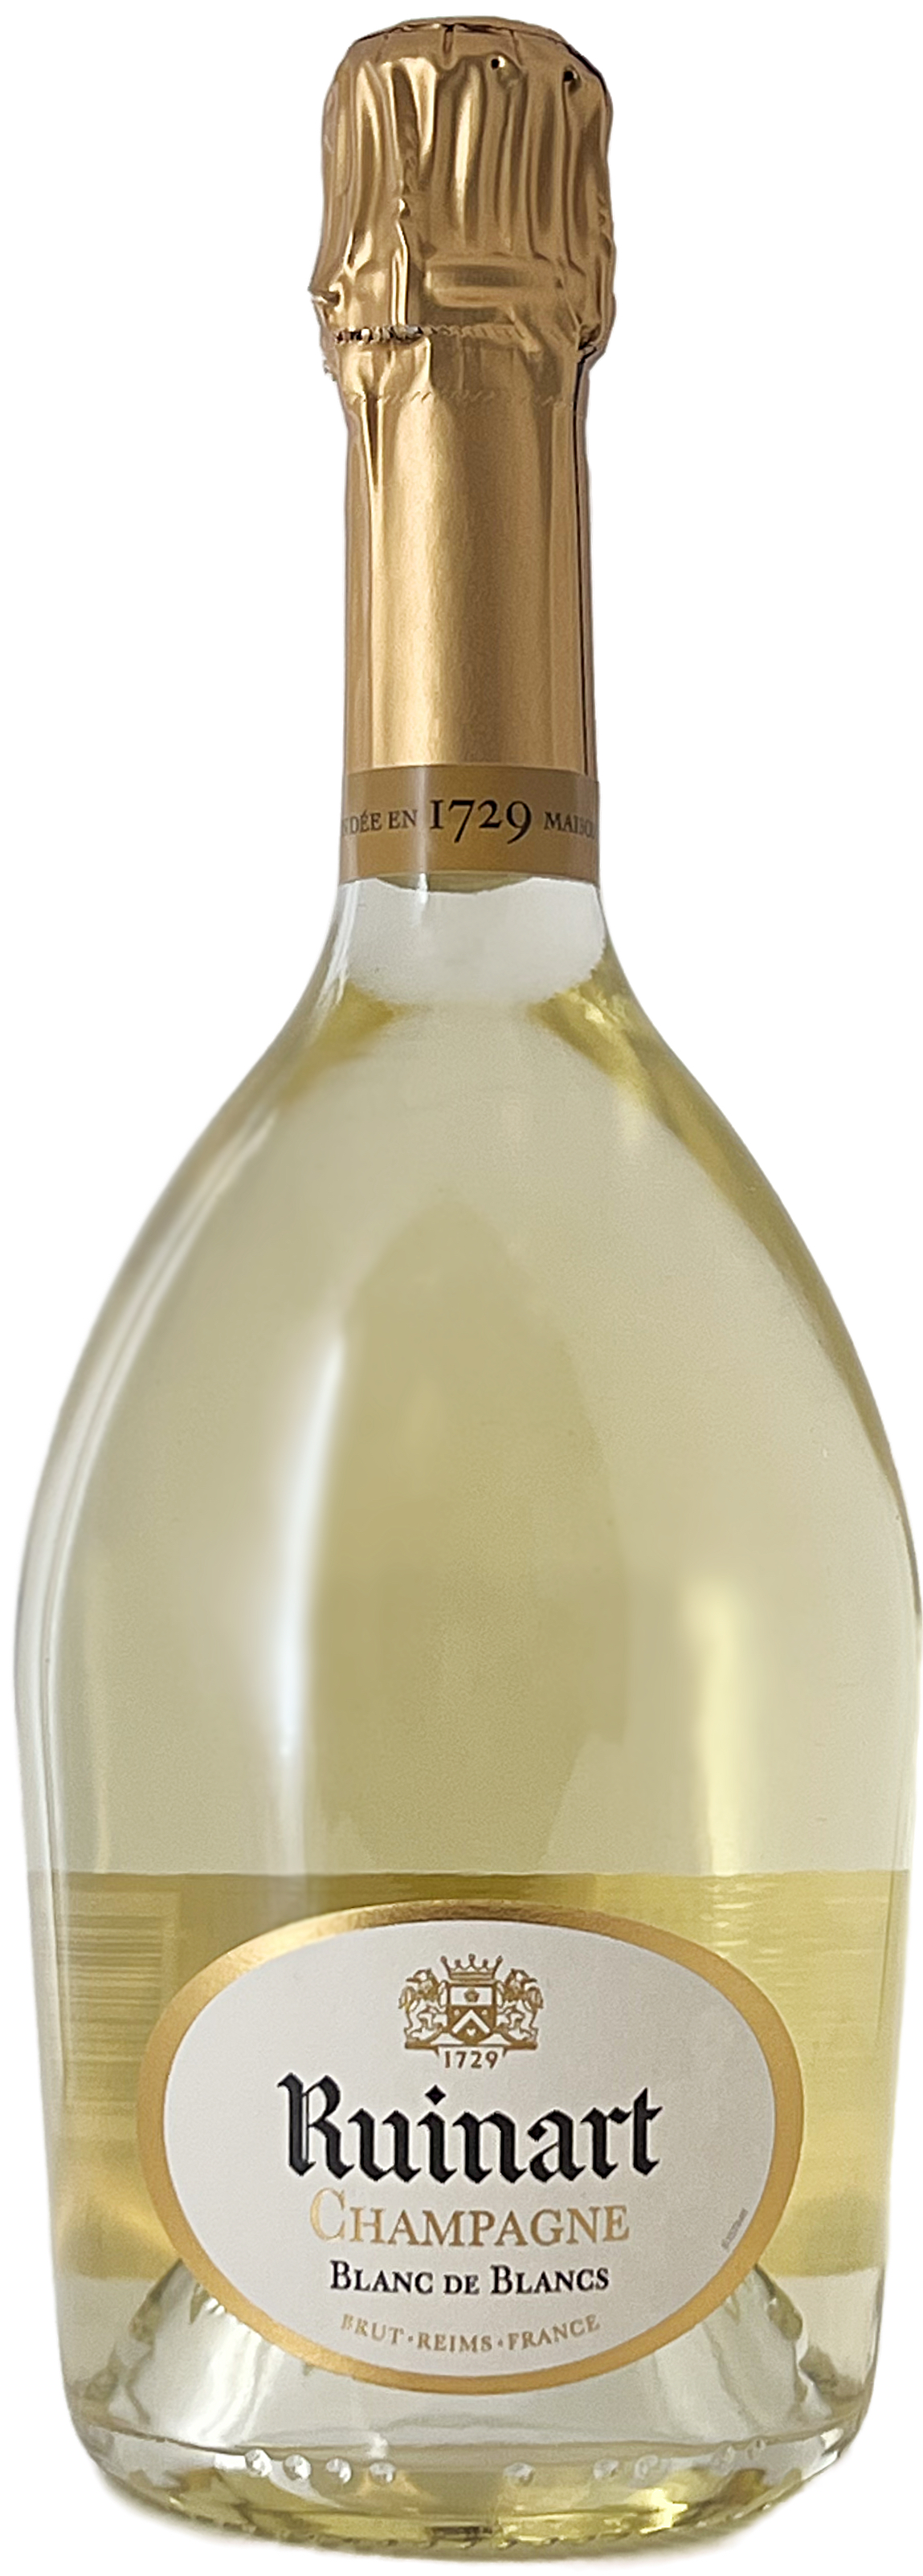 Champagne RUINART - Blanc de Blancs, Blanc de blancs, Champagne